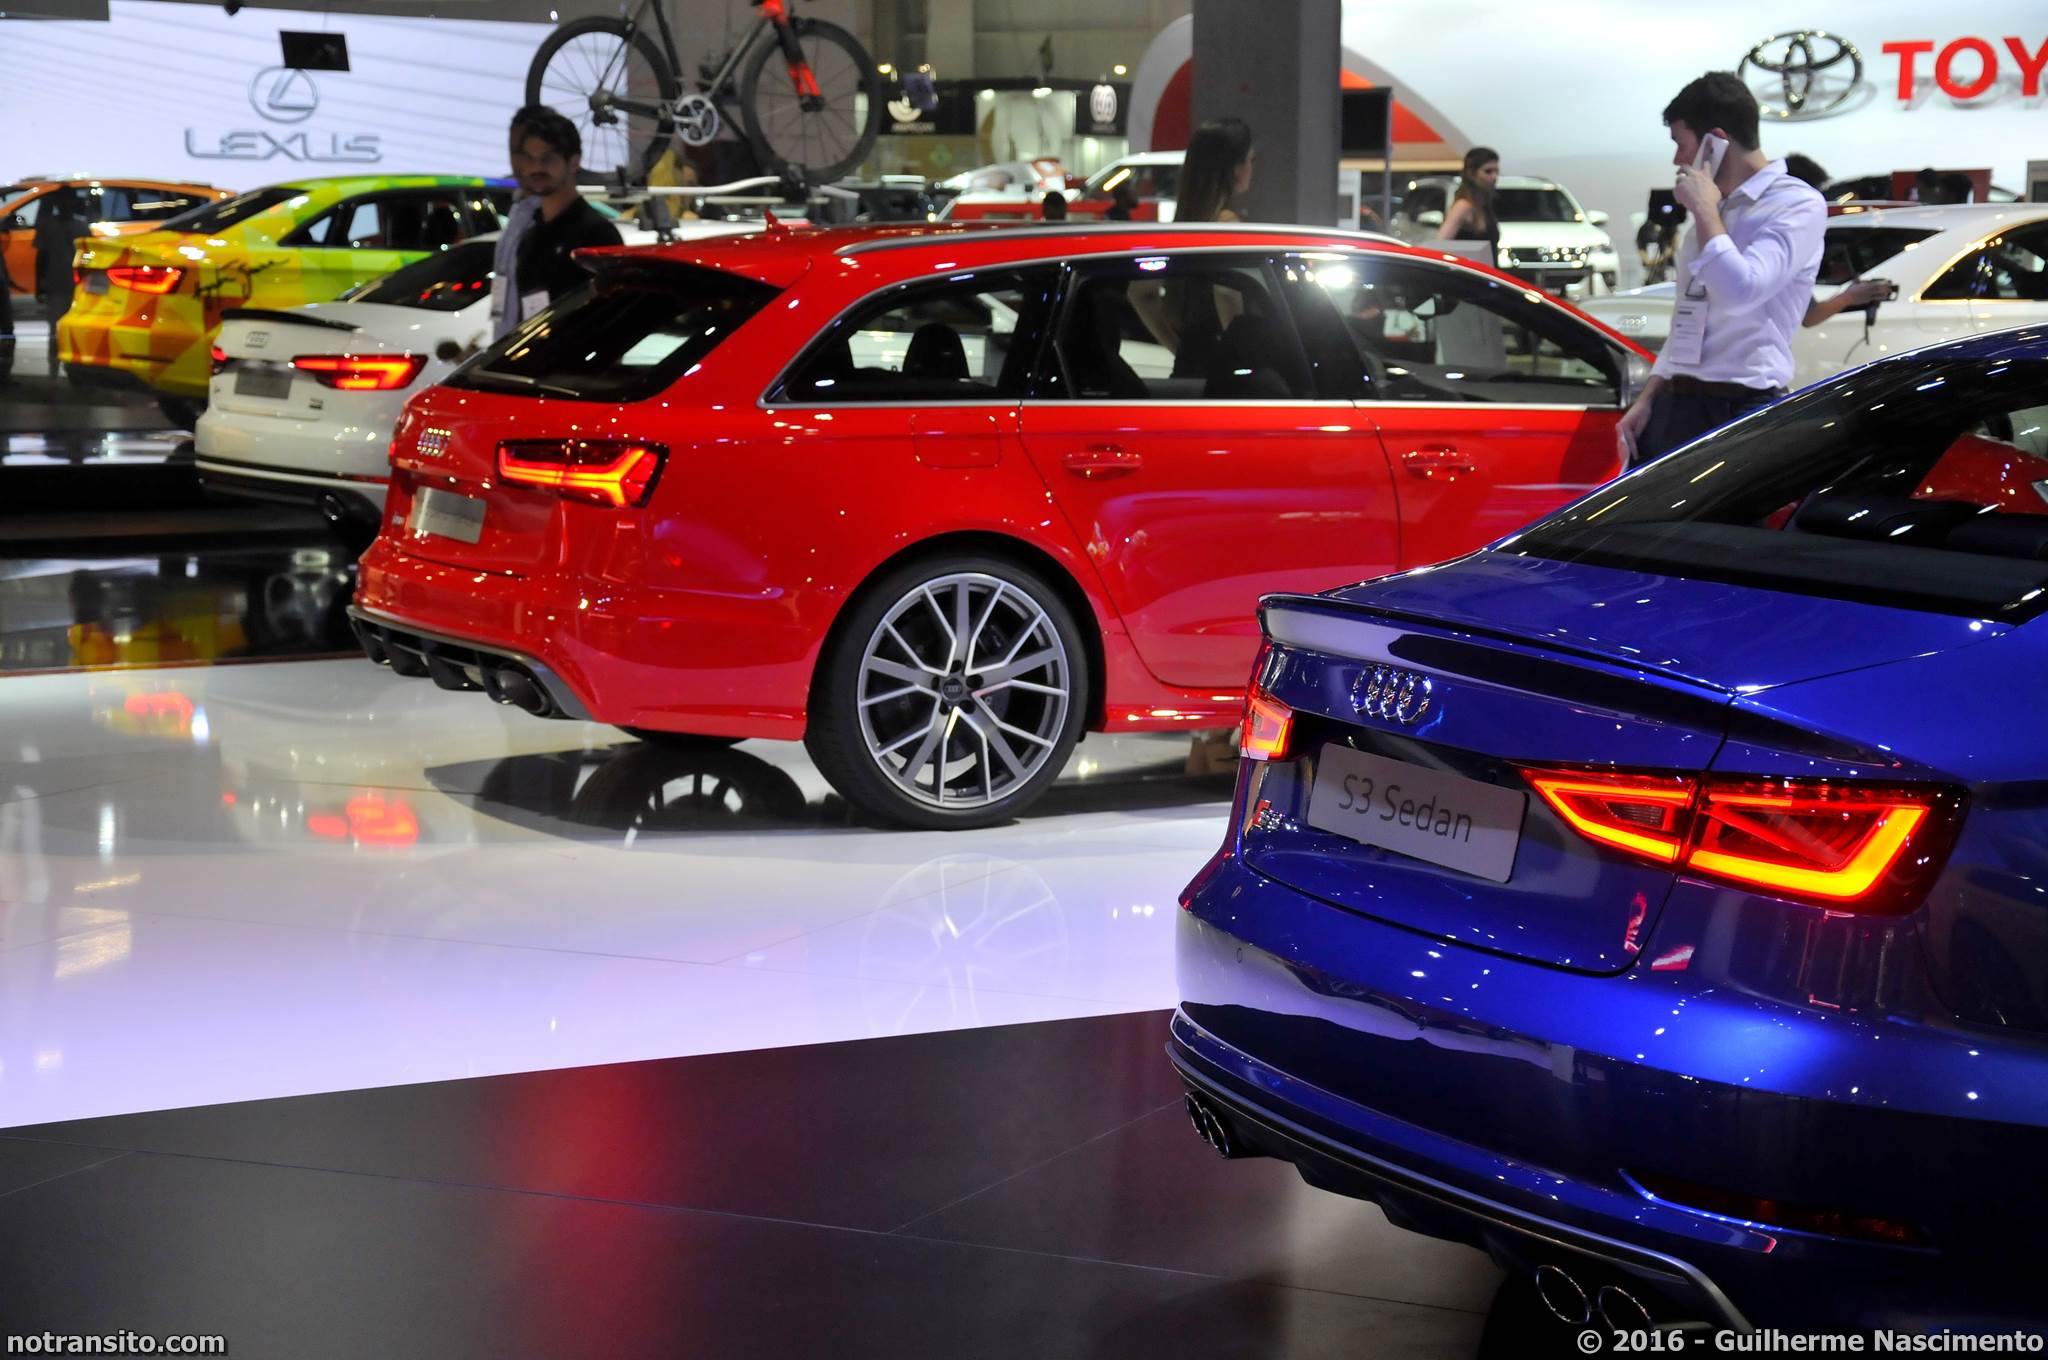 Estande Audi Salão do Automóvel 2016